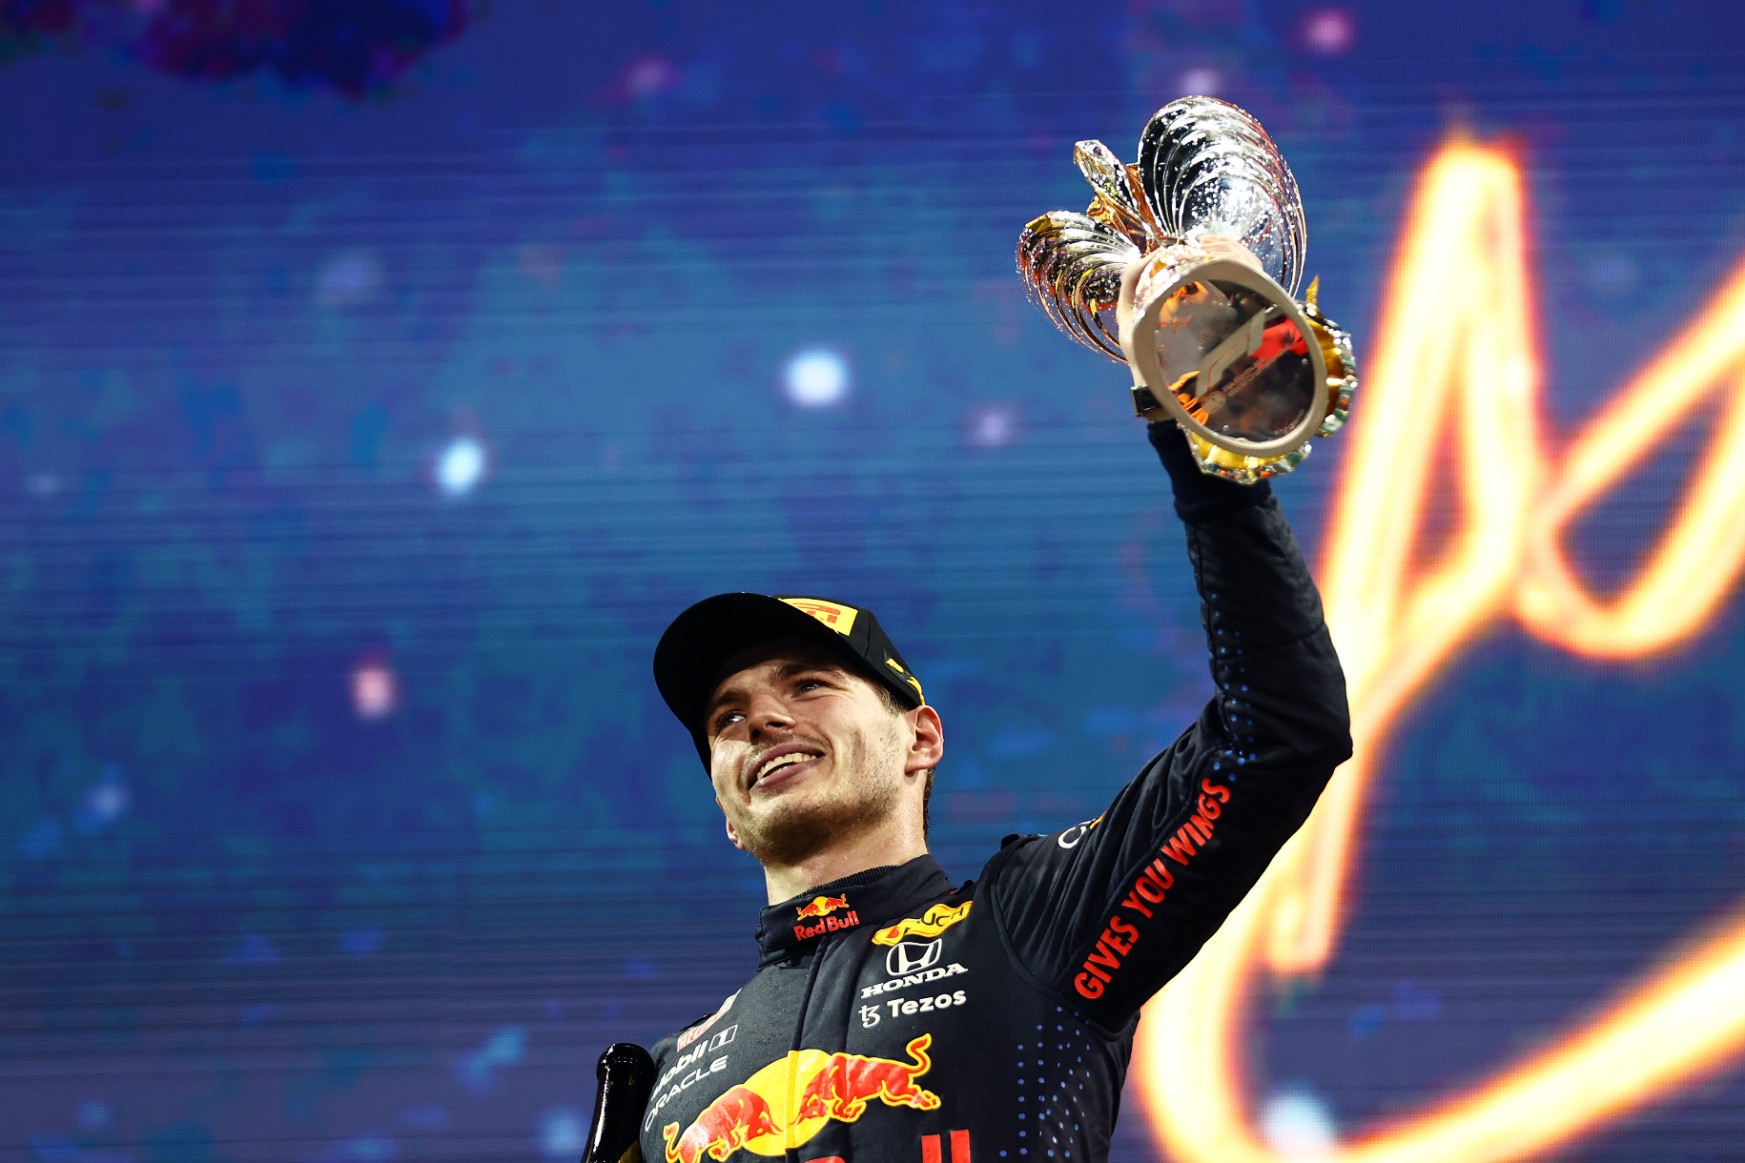 Utolsó körös előzéssel nyerte meg a világbajnokságot Max Verstappen